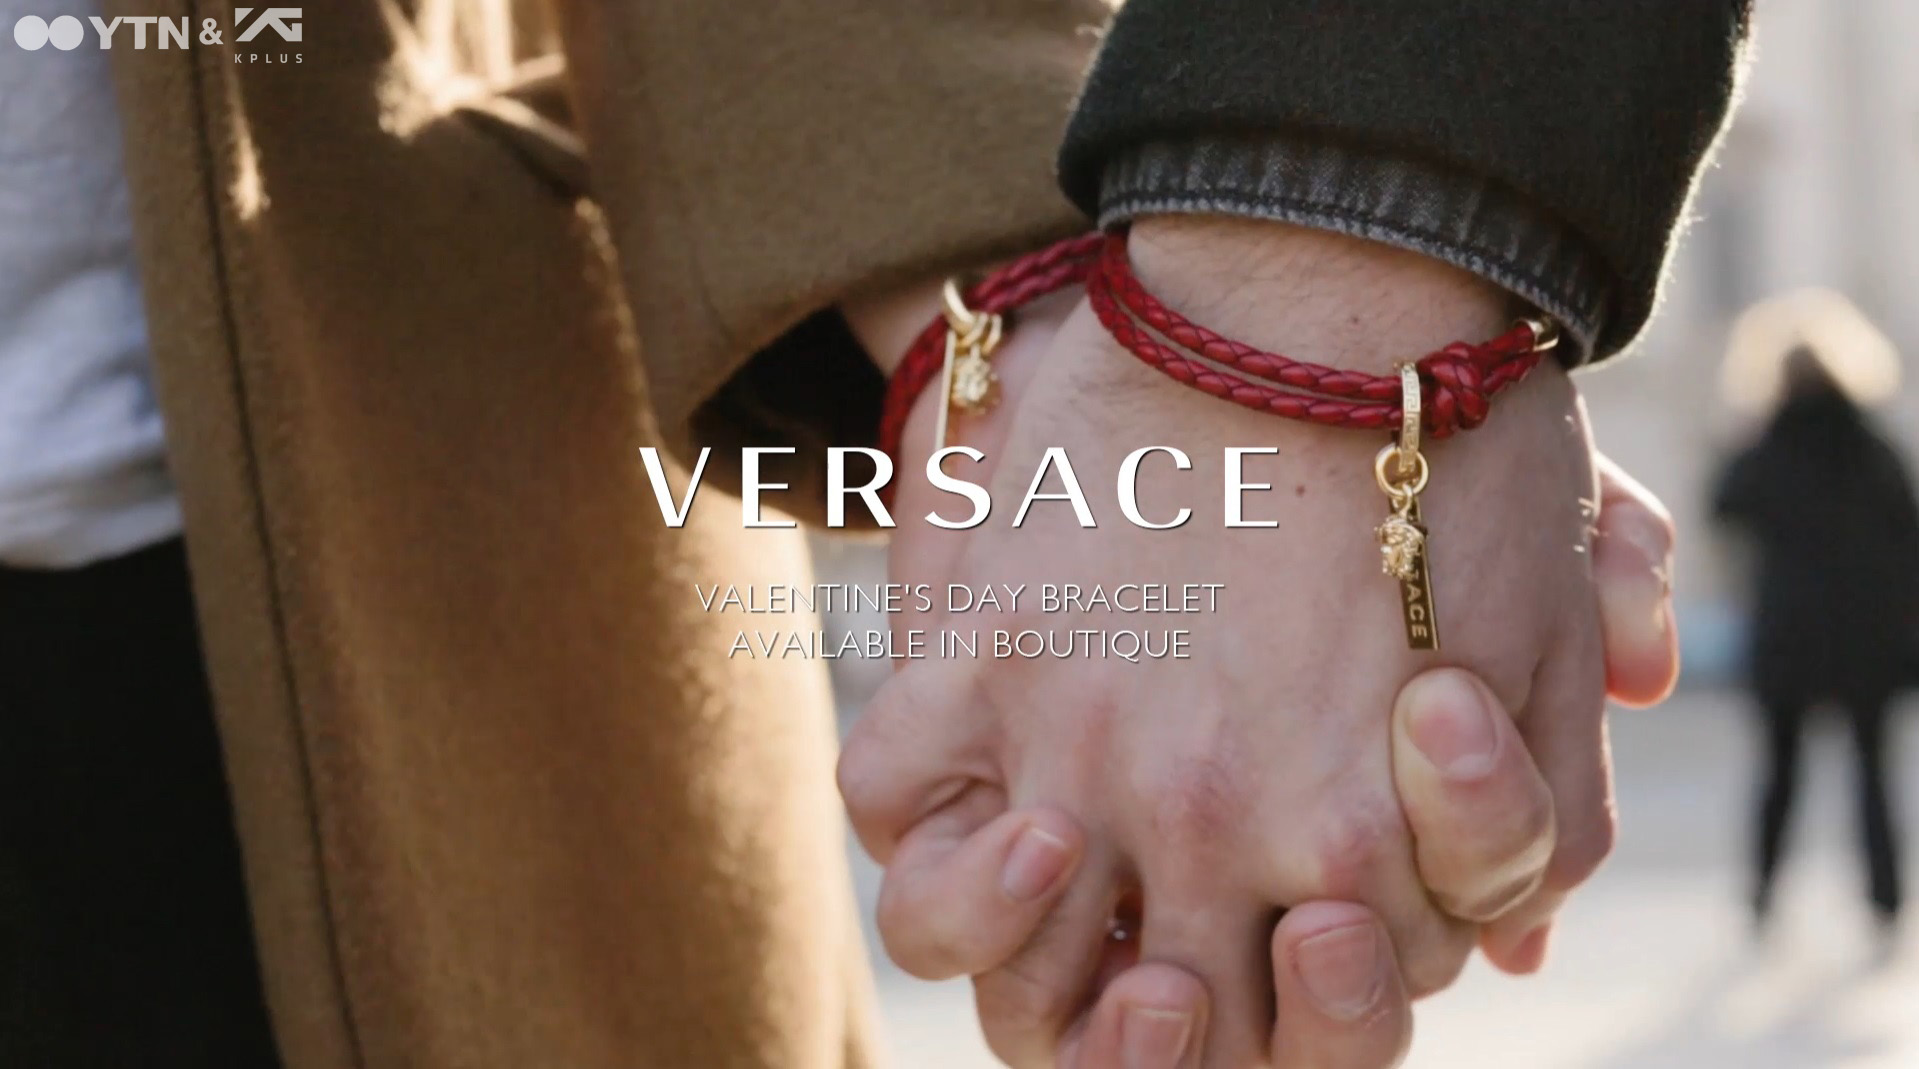 베르사체, 모든 연인들을 위한 'Love is' 캠페인 영상 공개